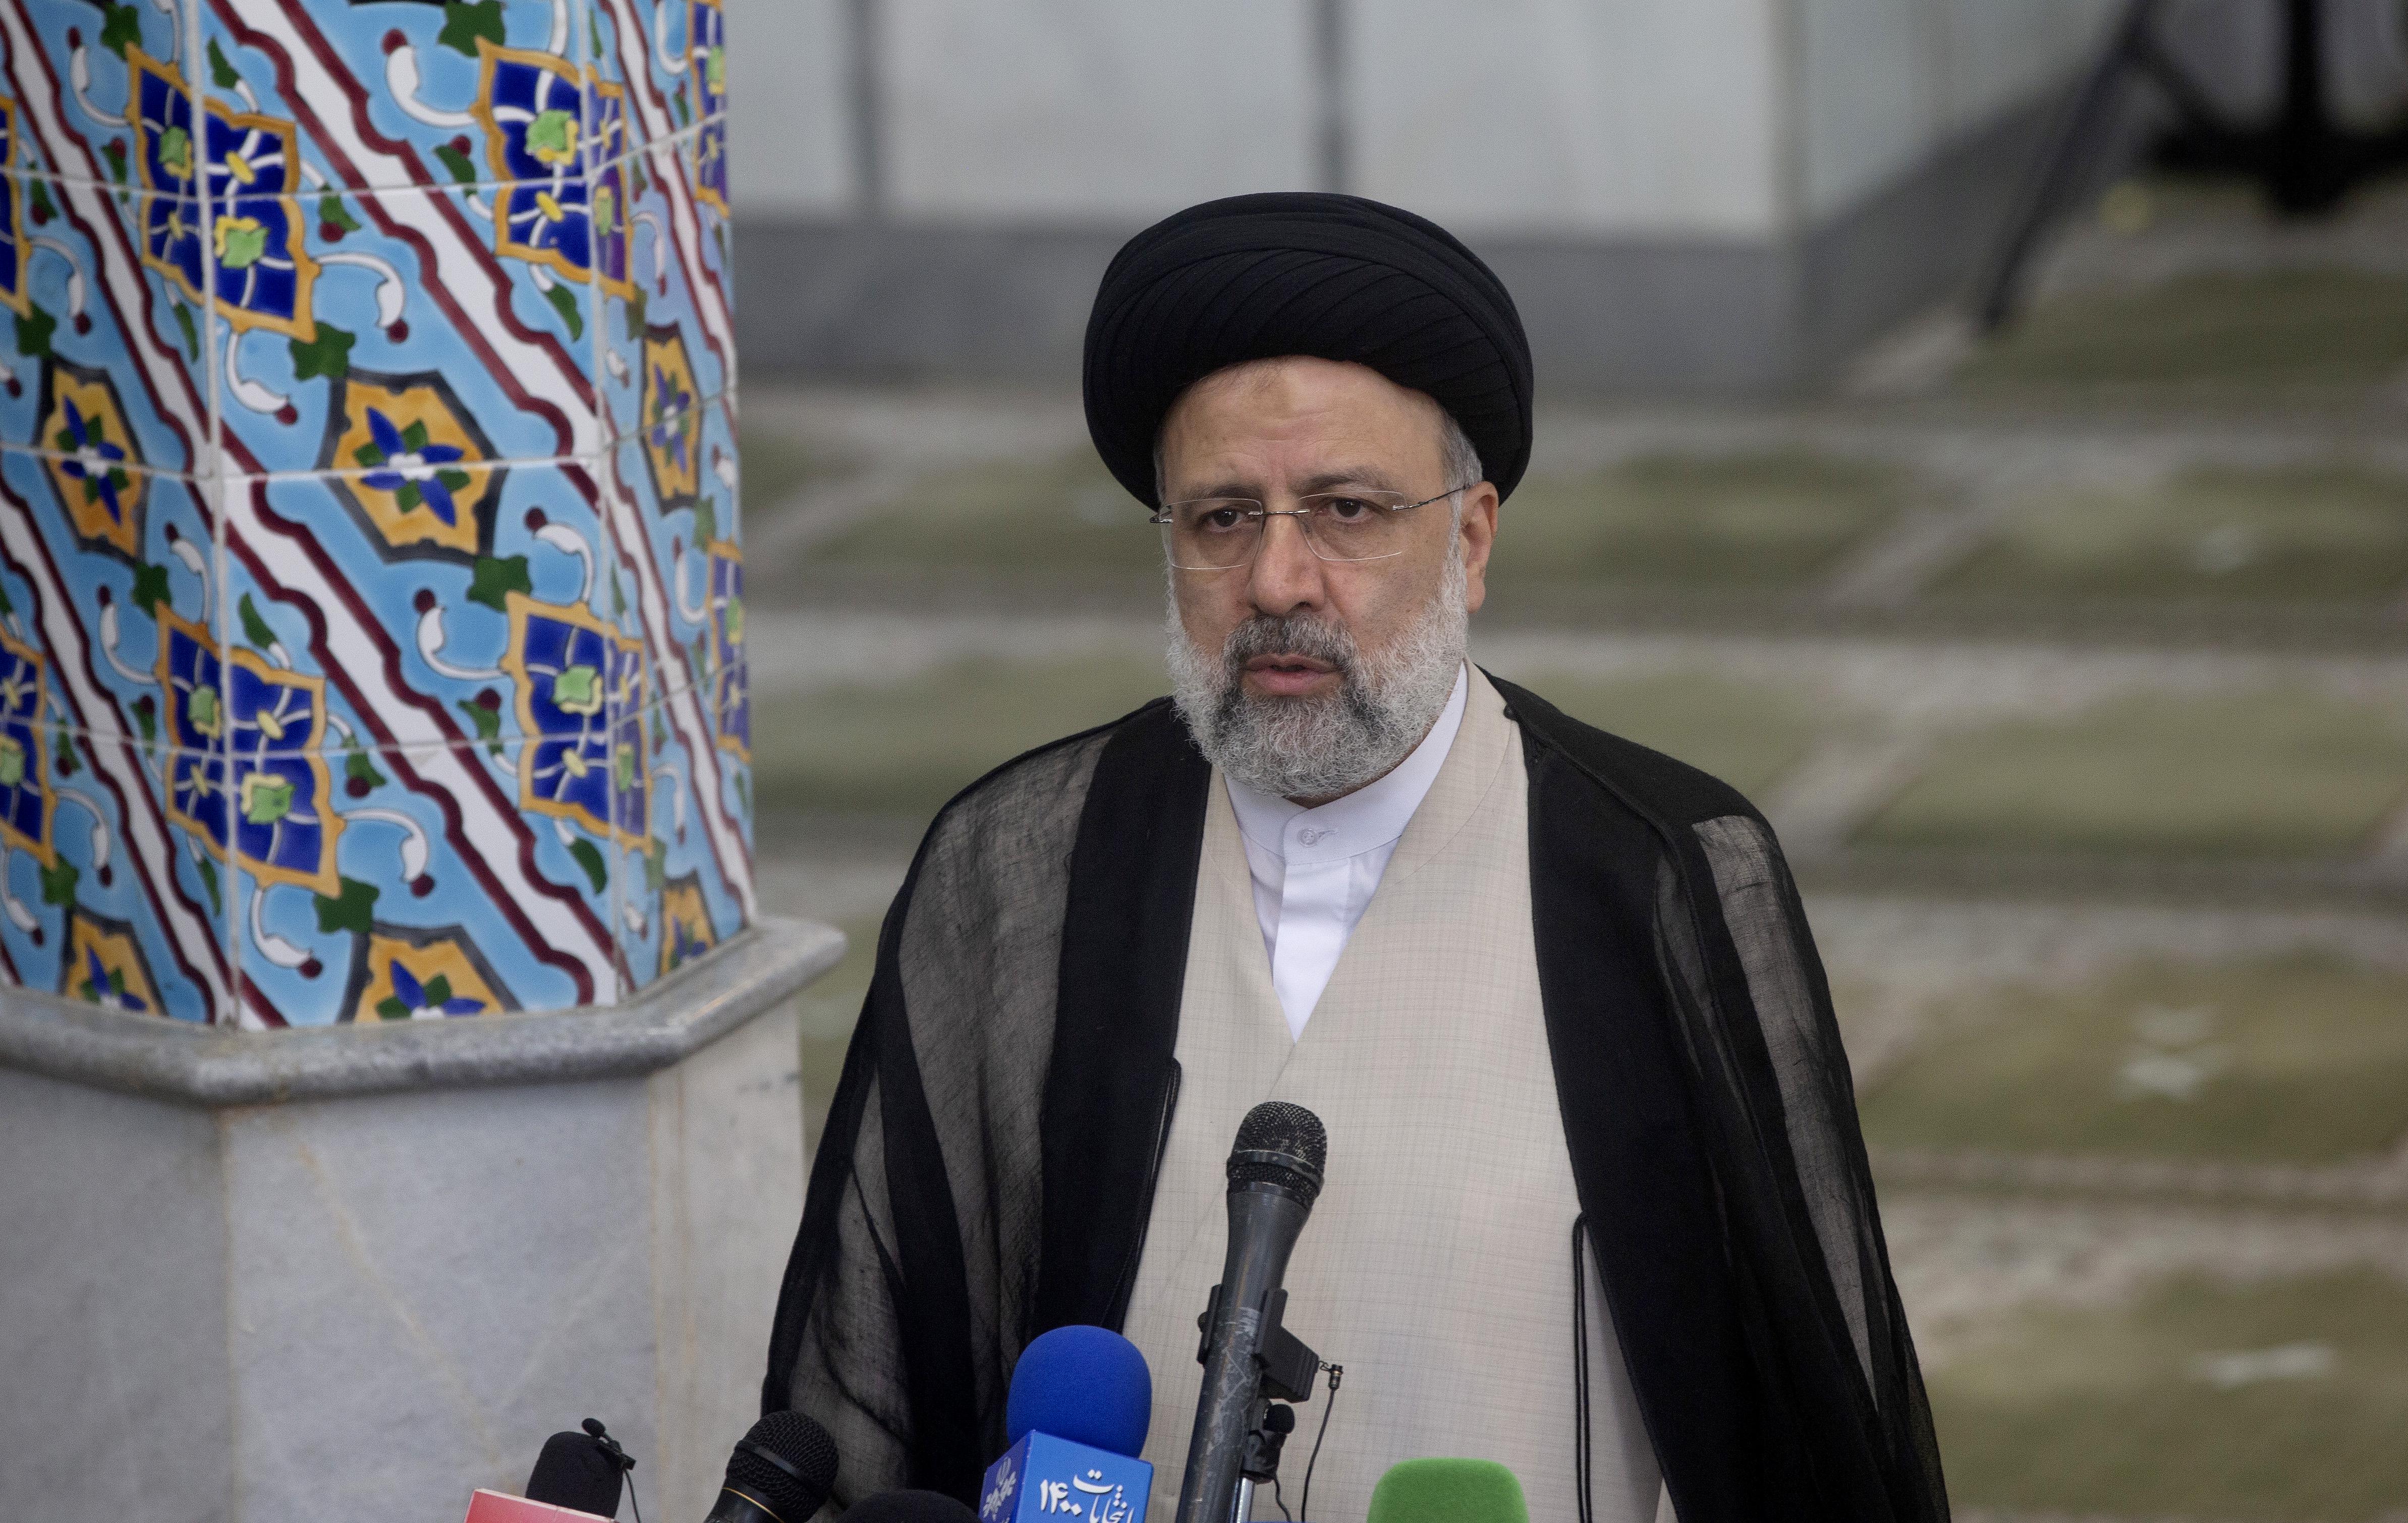 伊朗总统指称以色列“已越过红线”（伊朗对以色列的狠话）